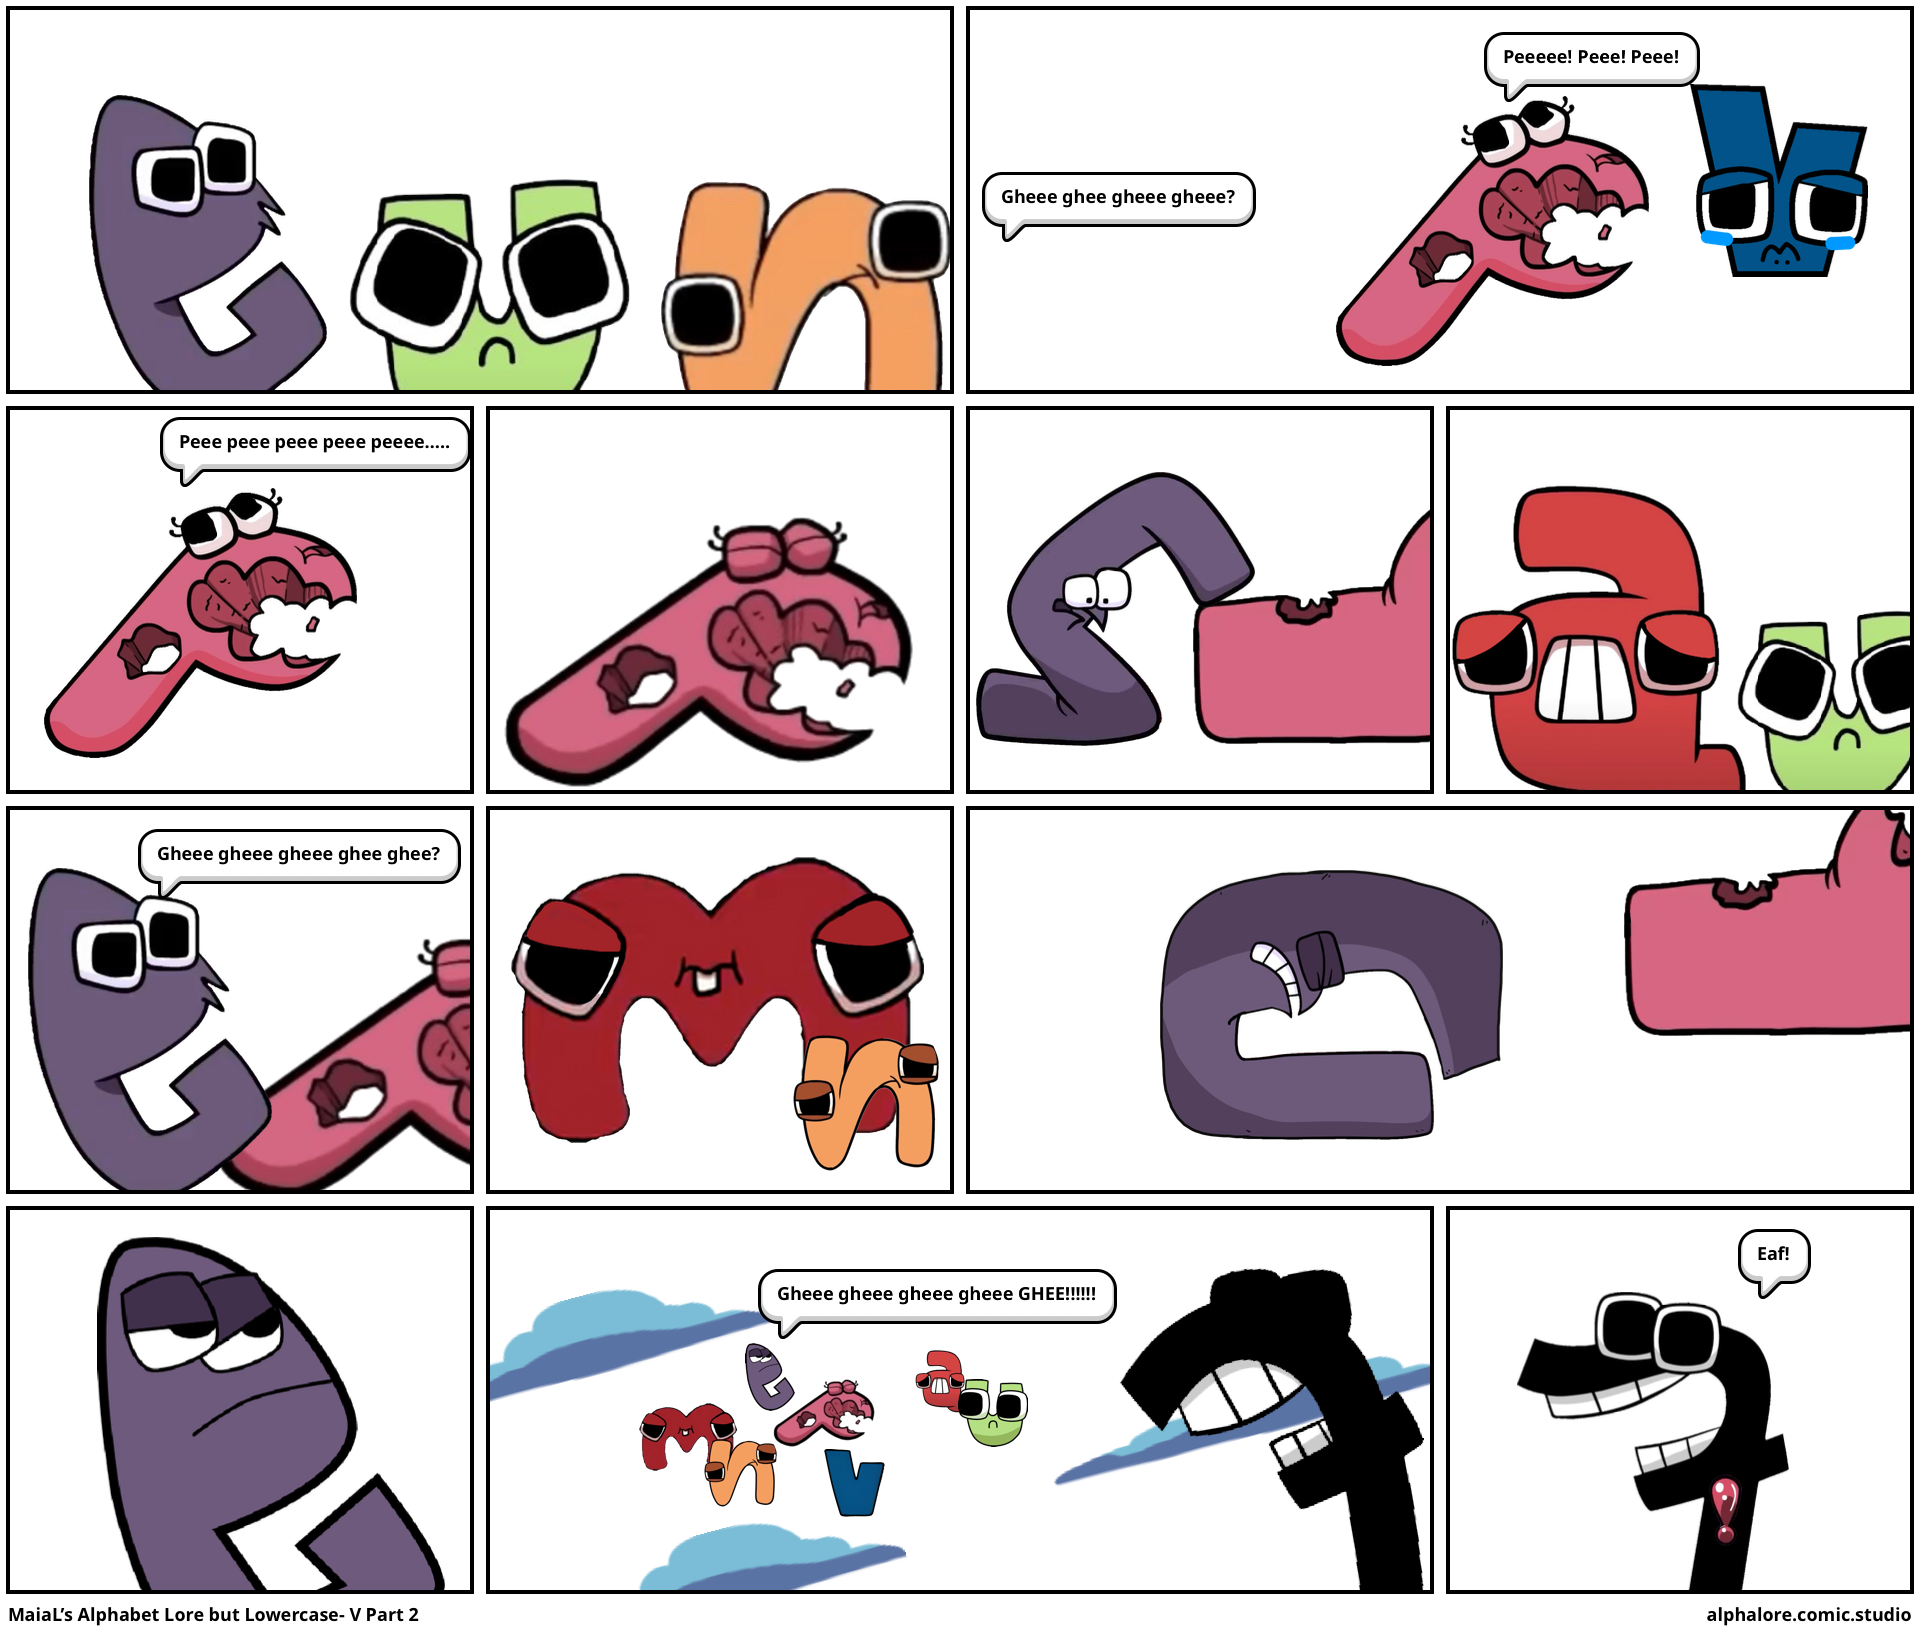 MaiaL's alphabet lore but lowercase: Y part 4 - Comic Studio